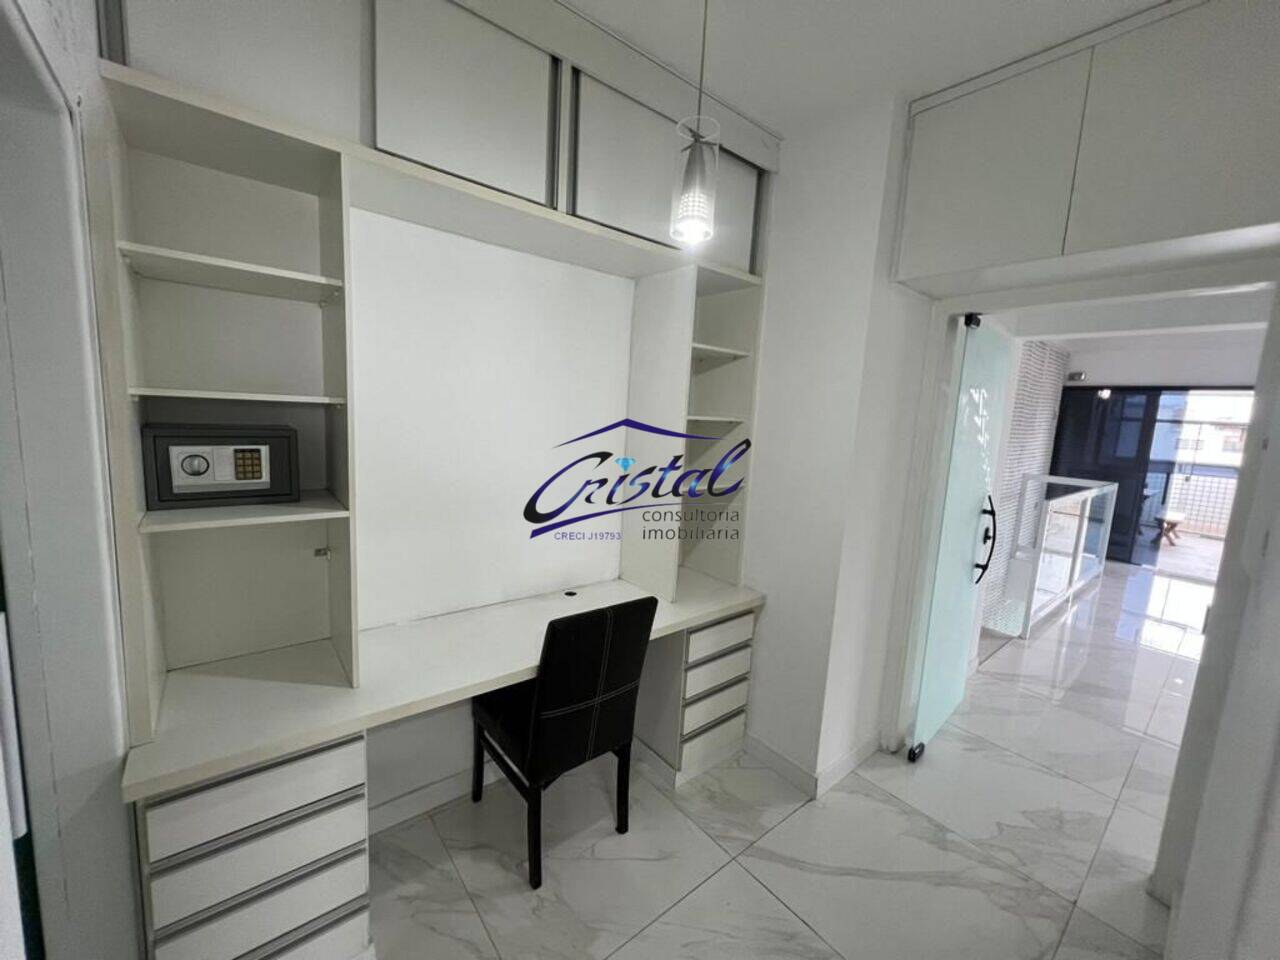 Apartamento duplex Ponta da Praia, Santos - SP